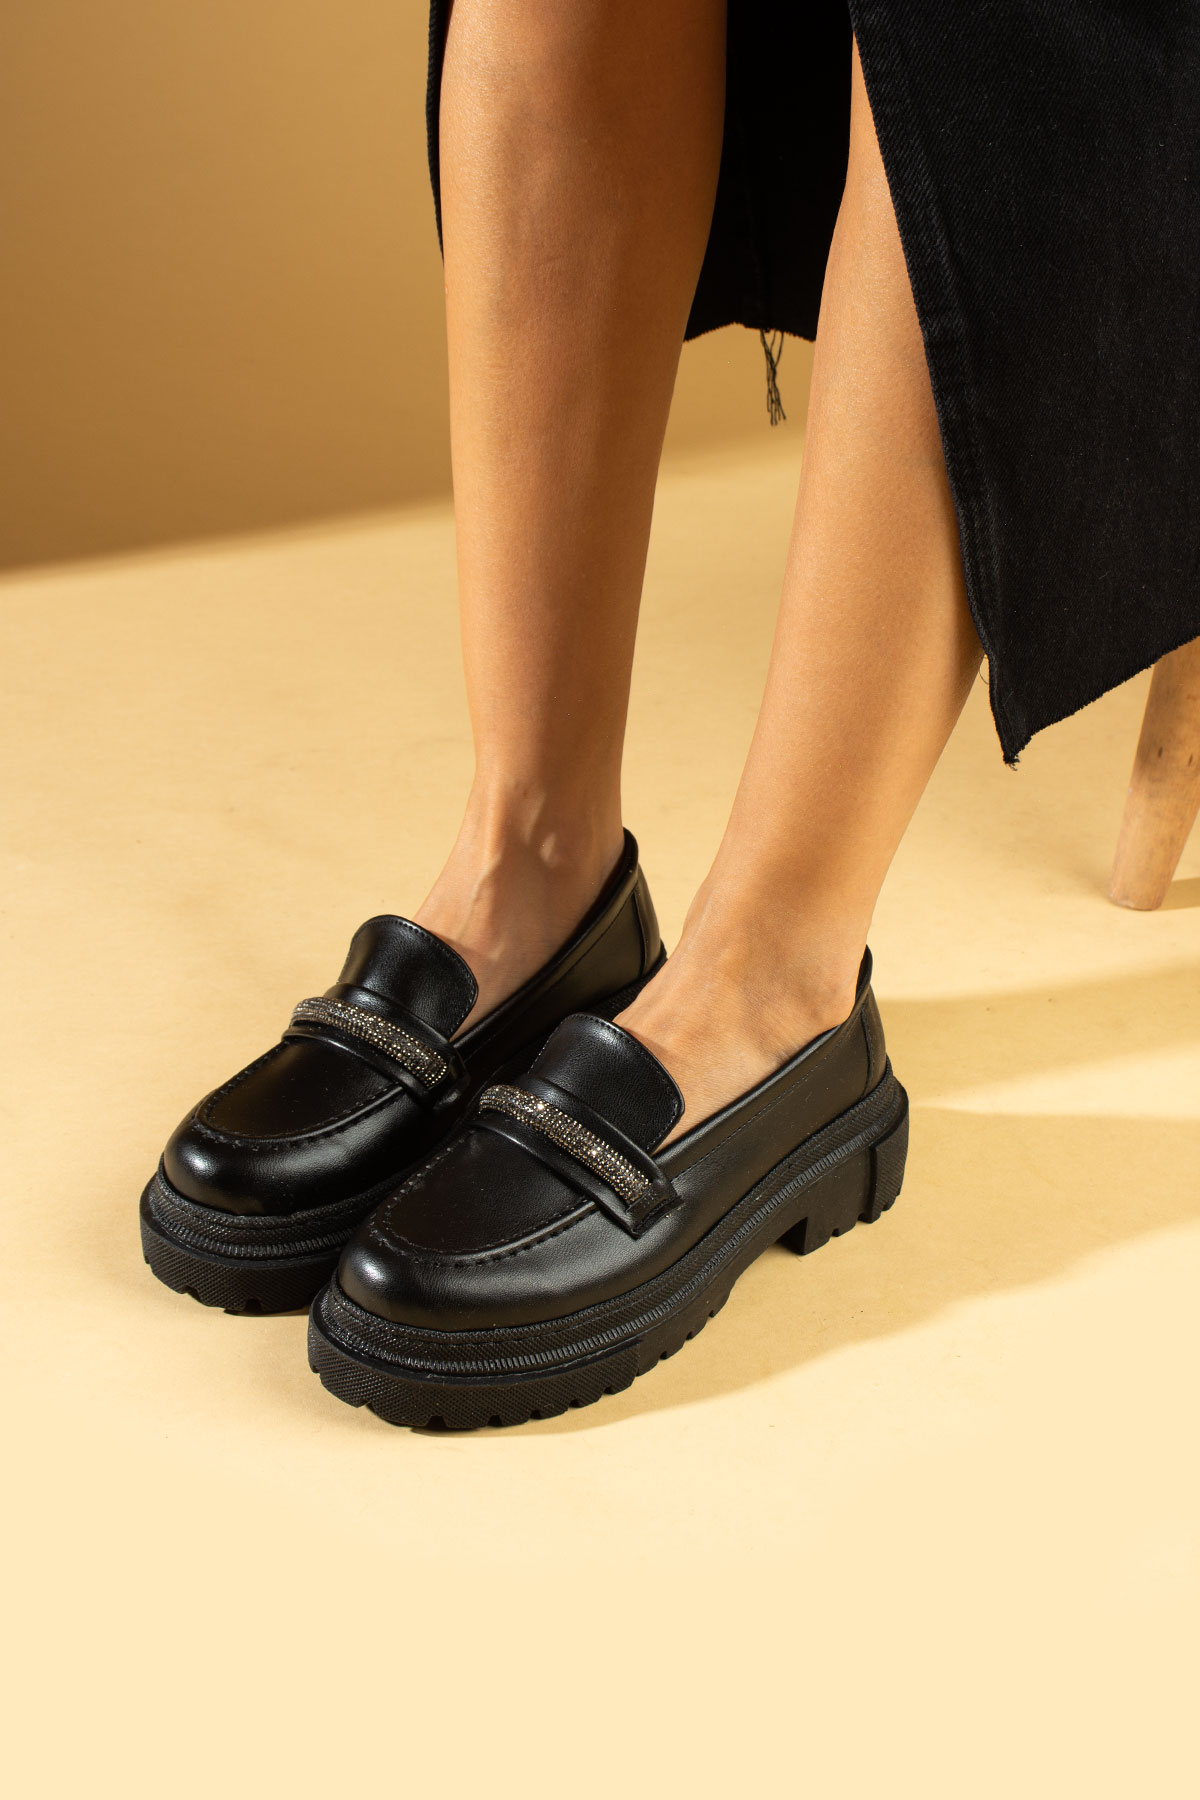 Pembe Potin Parlak Taş Detaylı Yüksek Taban Oxford Kadın Ayakkabı 001-717-23 - Siyah